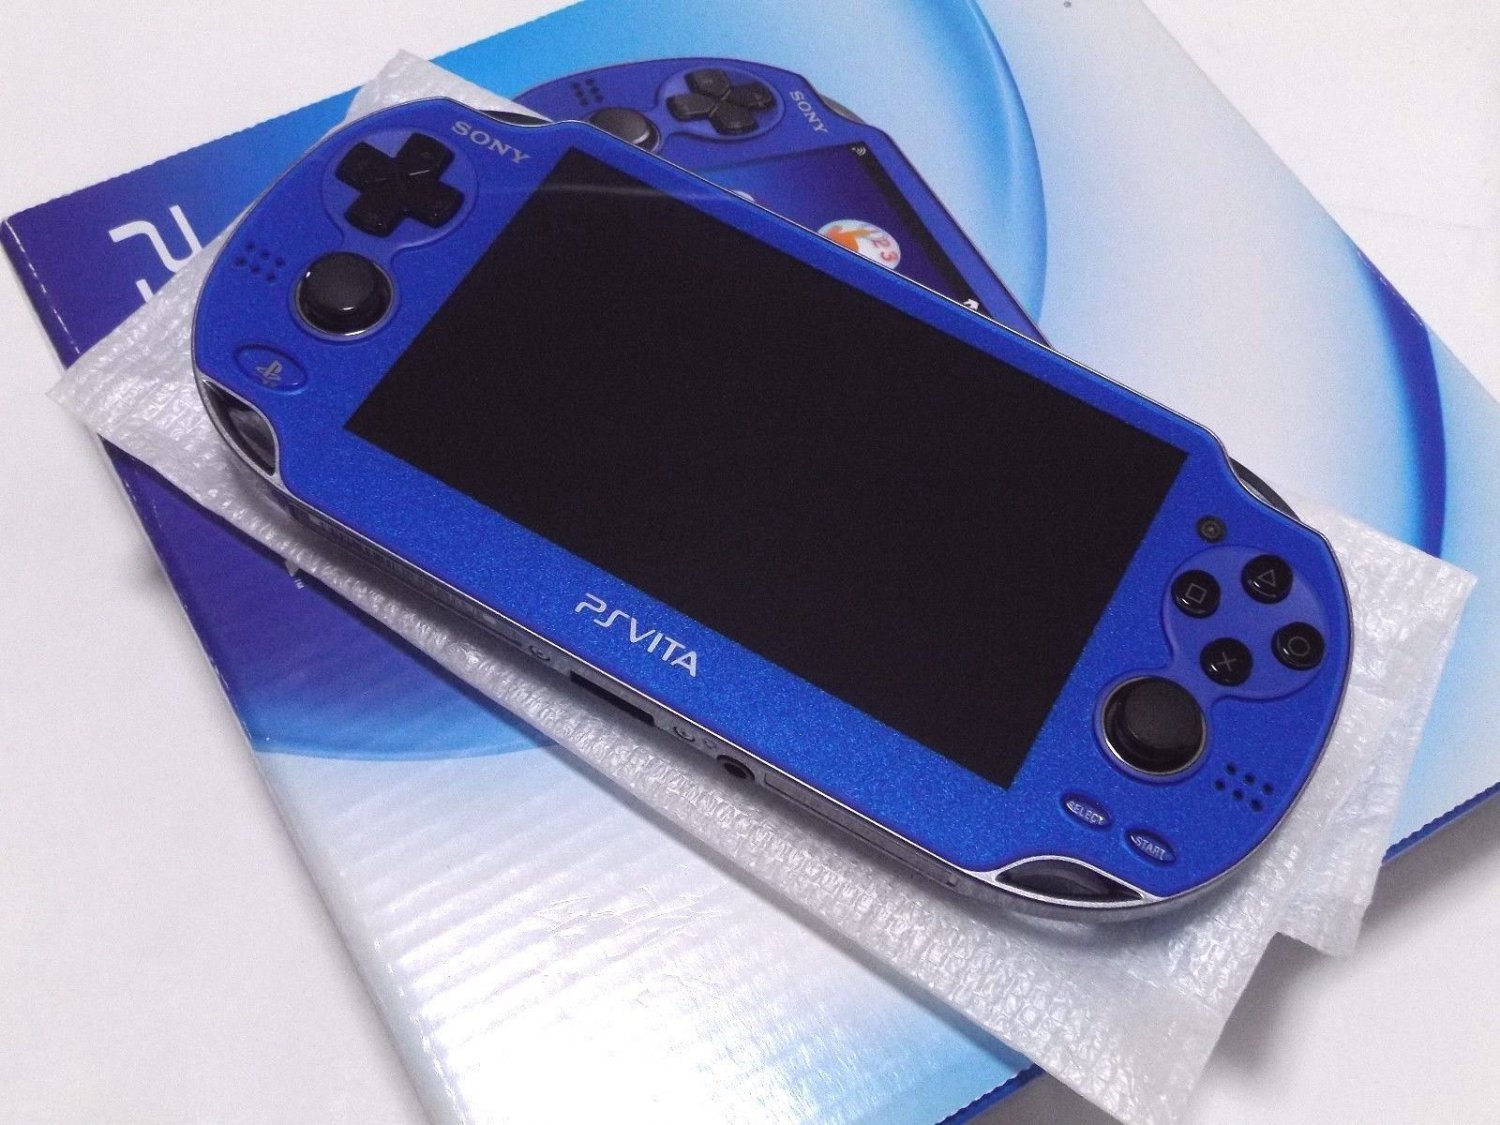 SALE SONY PS Vita PCH-1000 ZA04 Blue Wi-fi Model Console